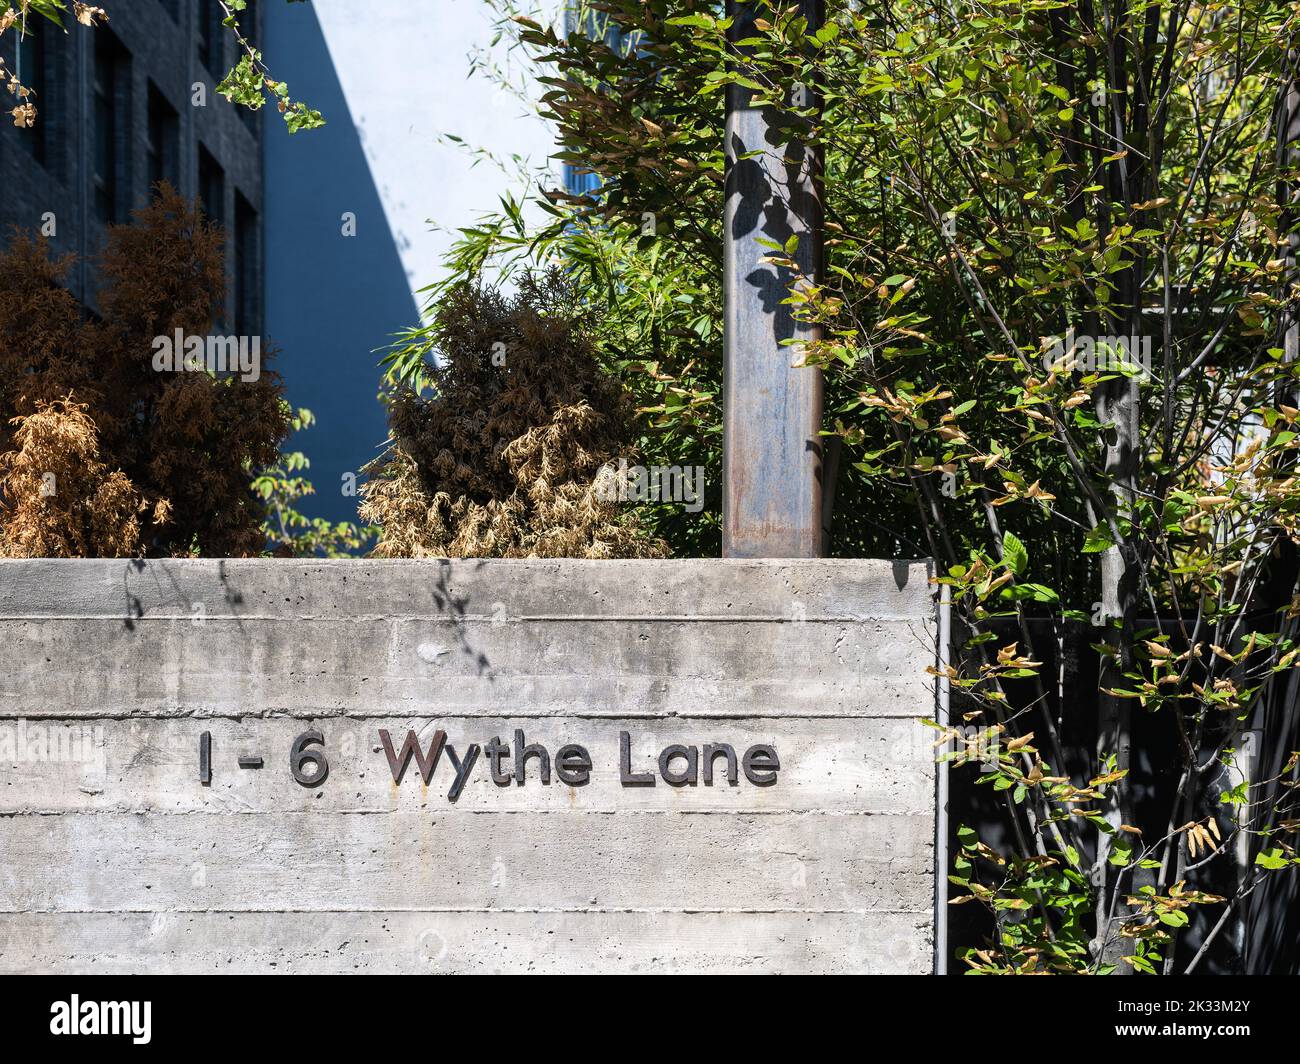 1-6 Wythe Lane Foto de stock